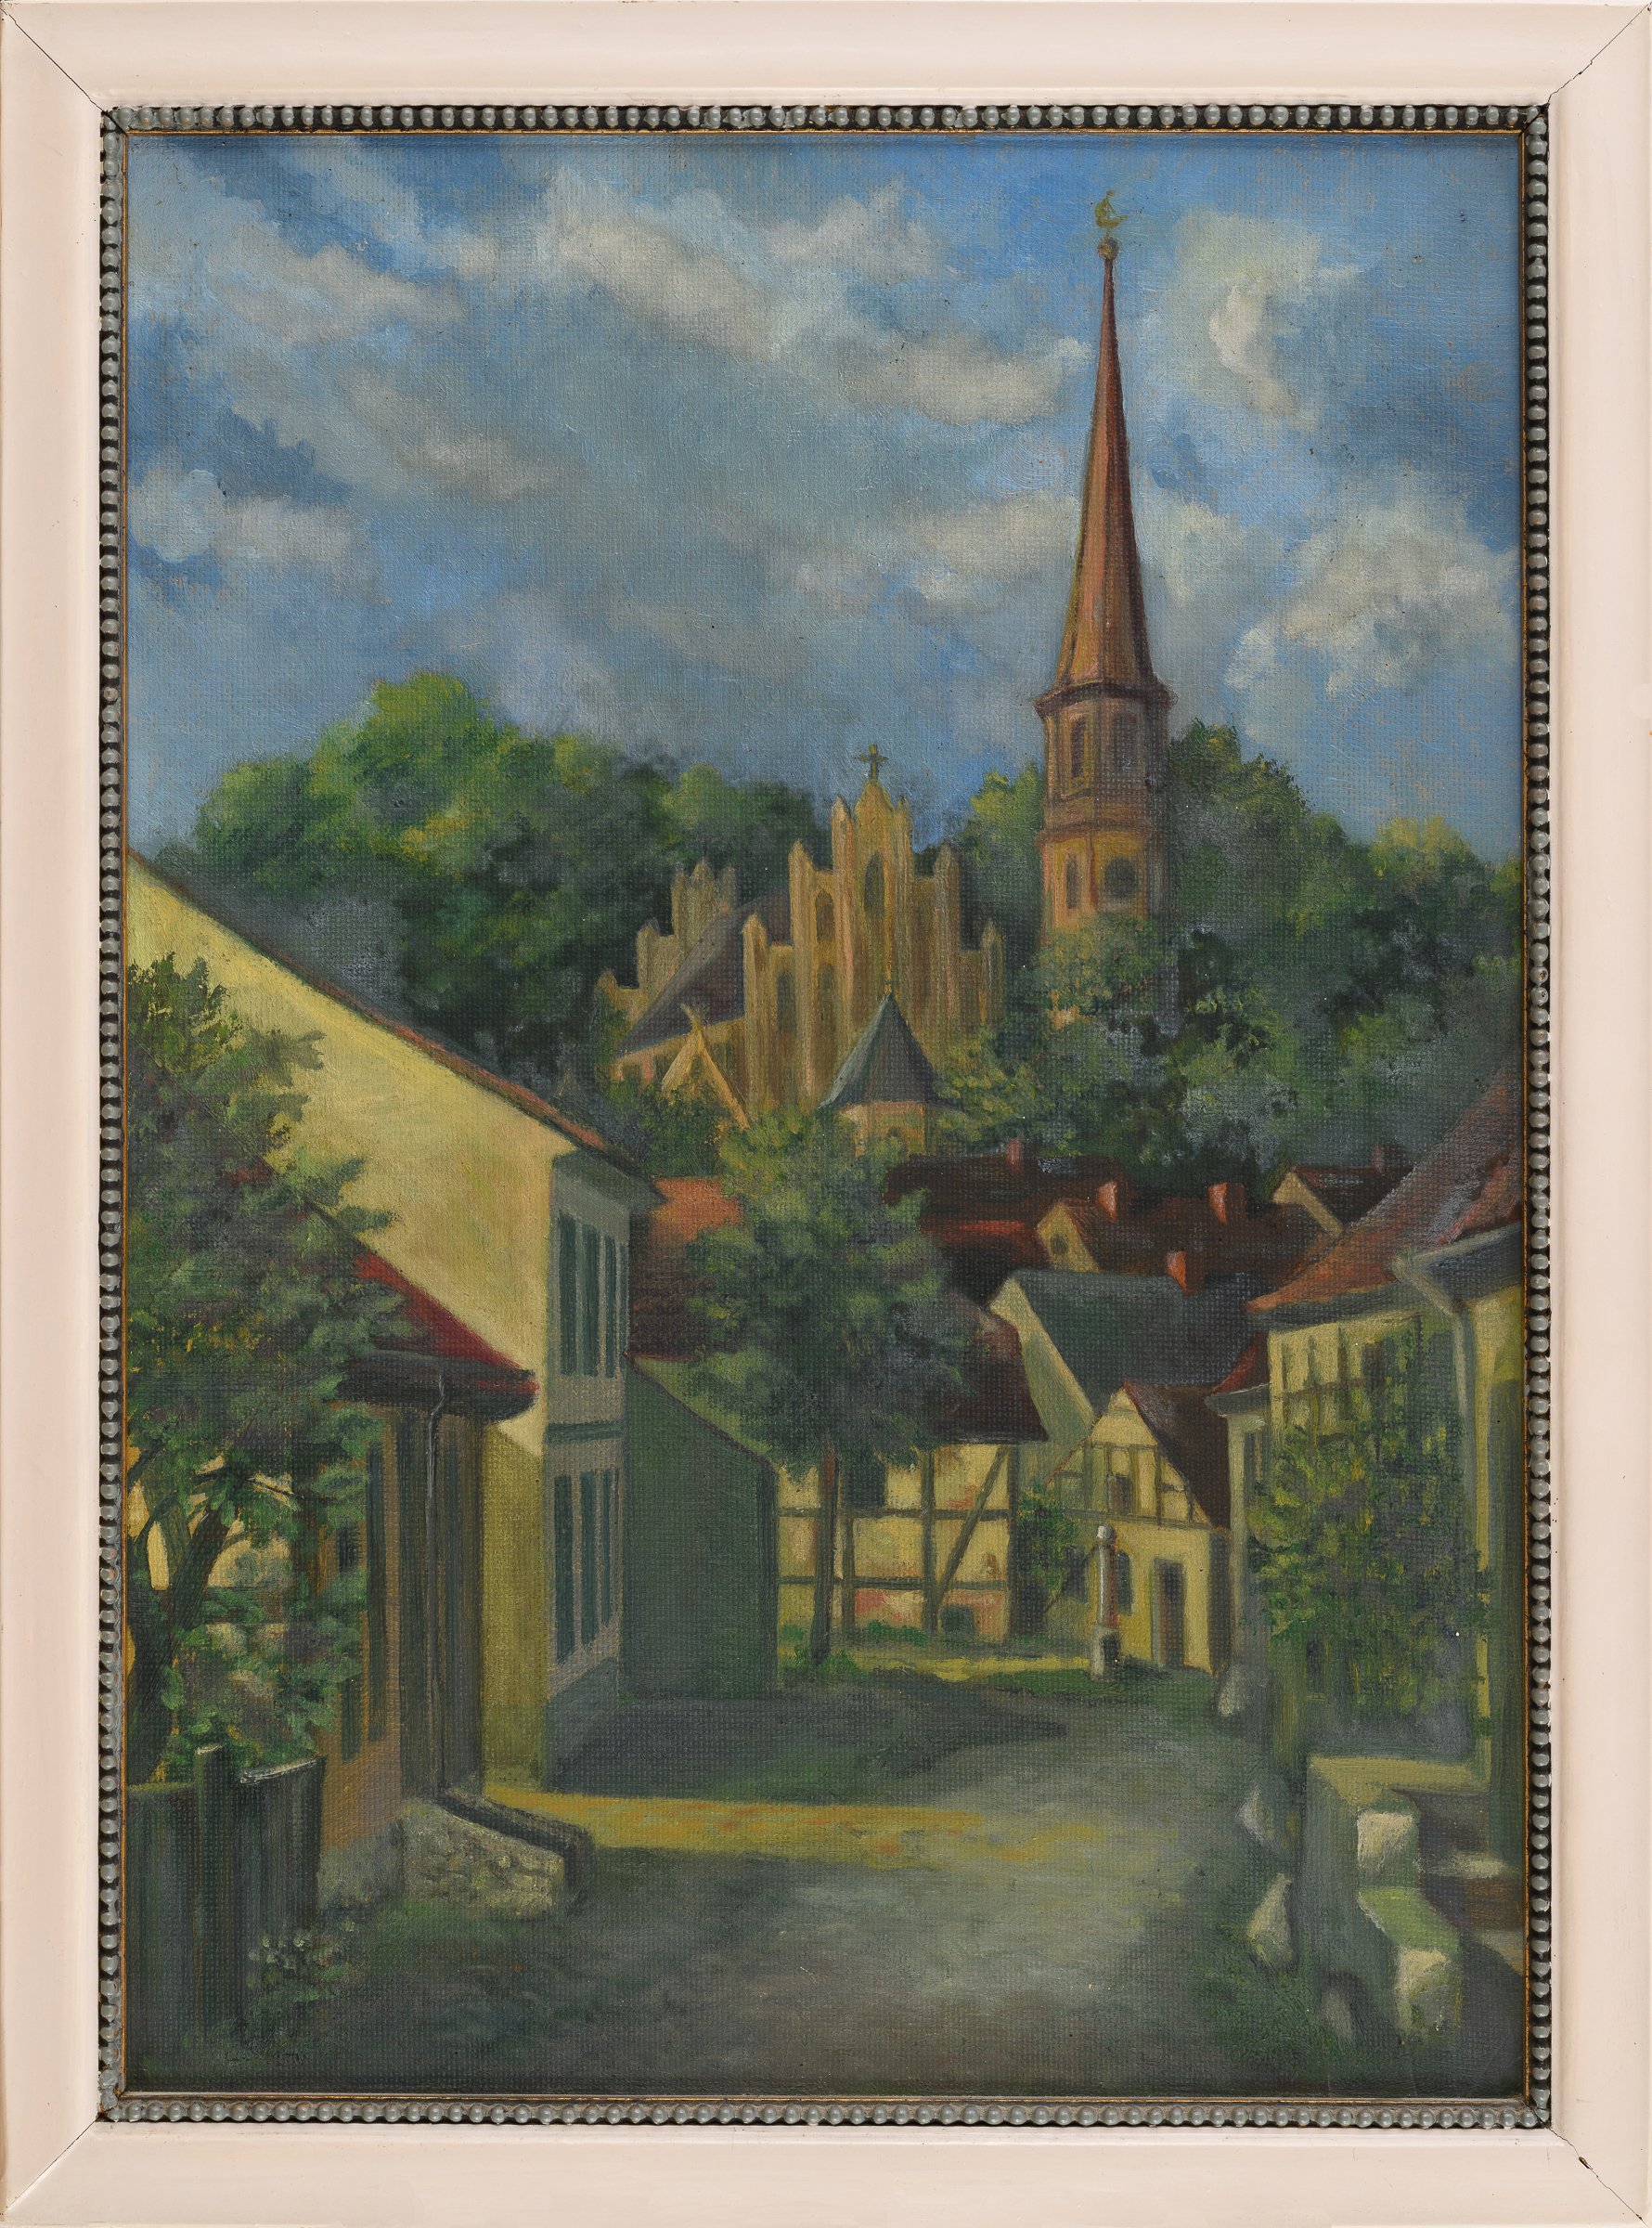 Ölbild "Oberkietz mit Nicolaikirche" (Binnenschifffahrts-Museum Oderberg CC BY-NC-SA)